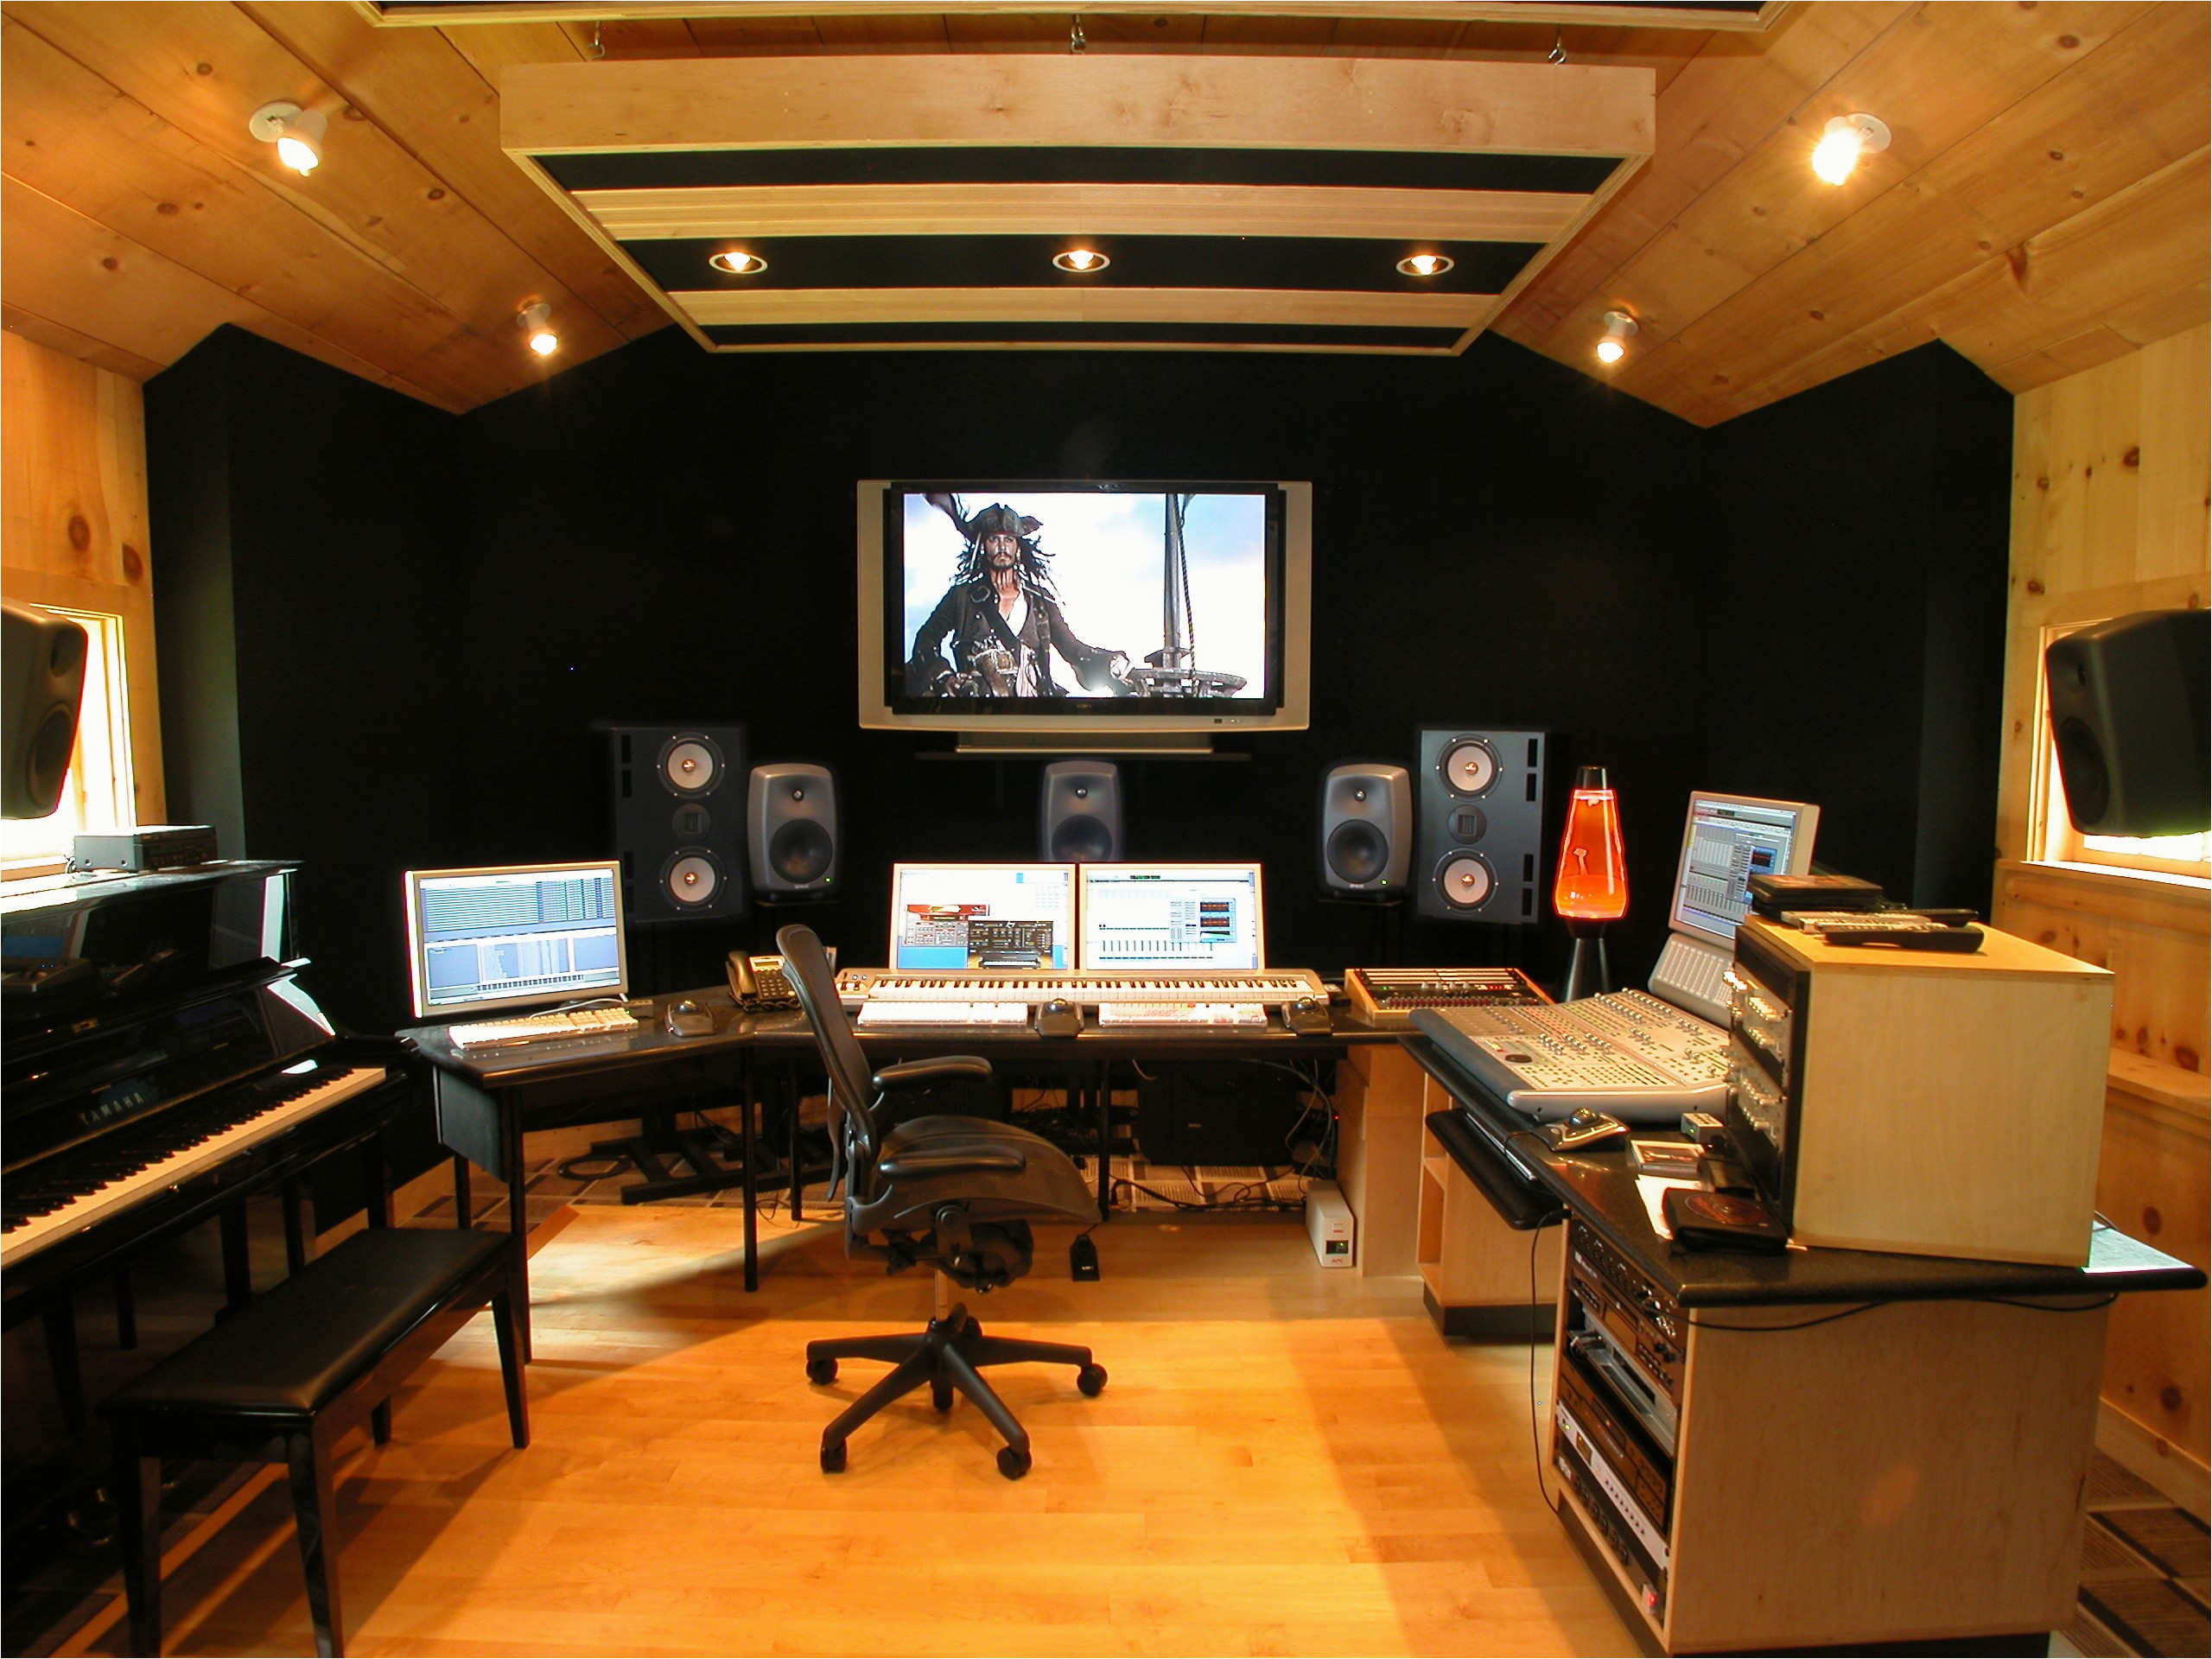 2560x1920 R Home Design Studio top Home Recording Studio Design Wallpaper Home Decor